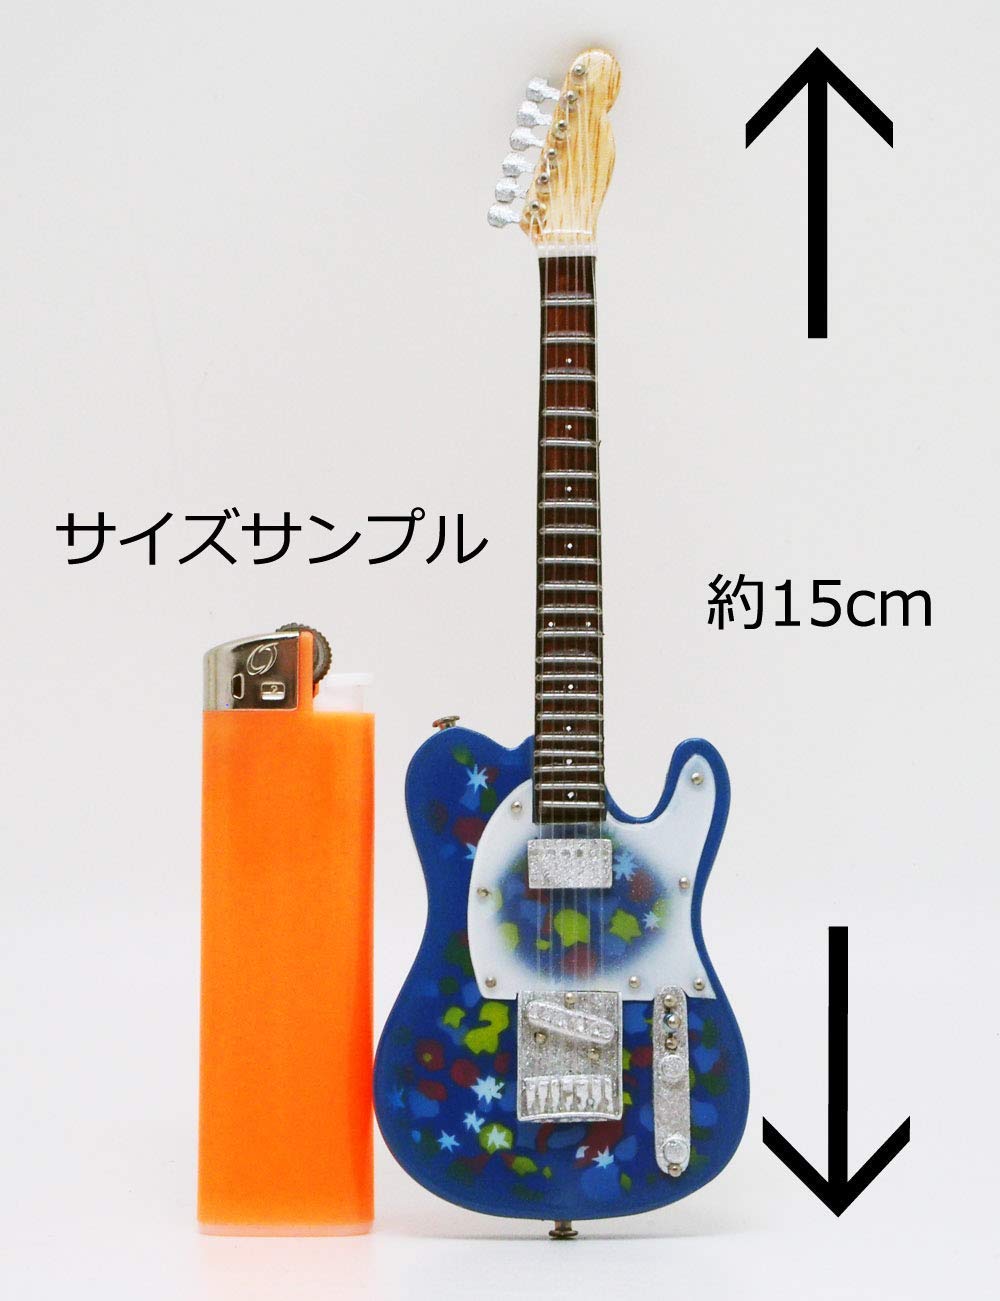 スガシカオ  限定ミニチュアレプリカギター